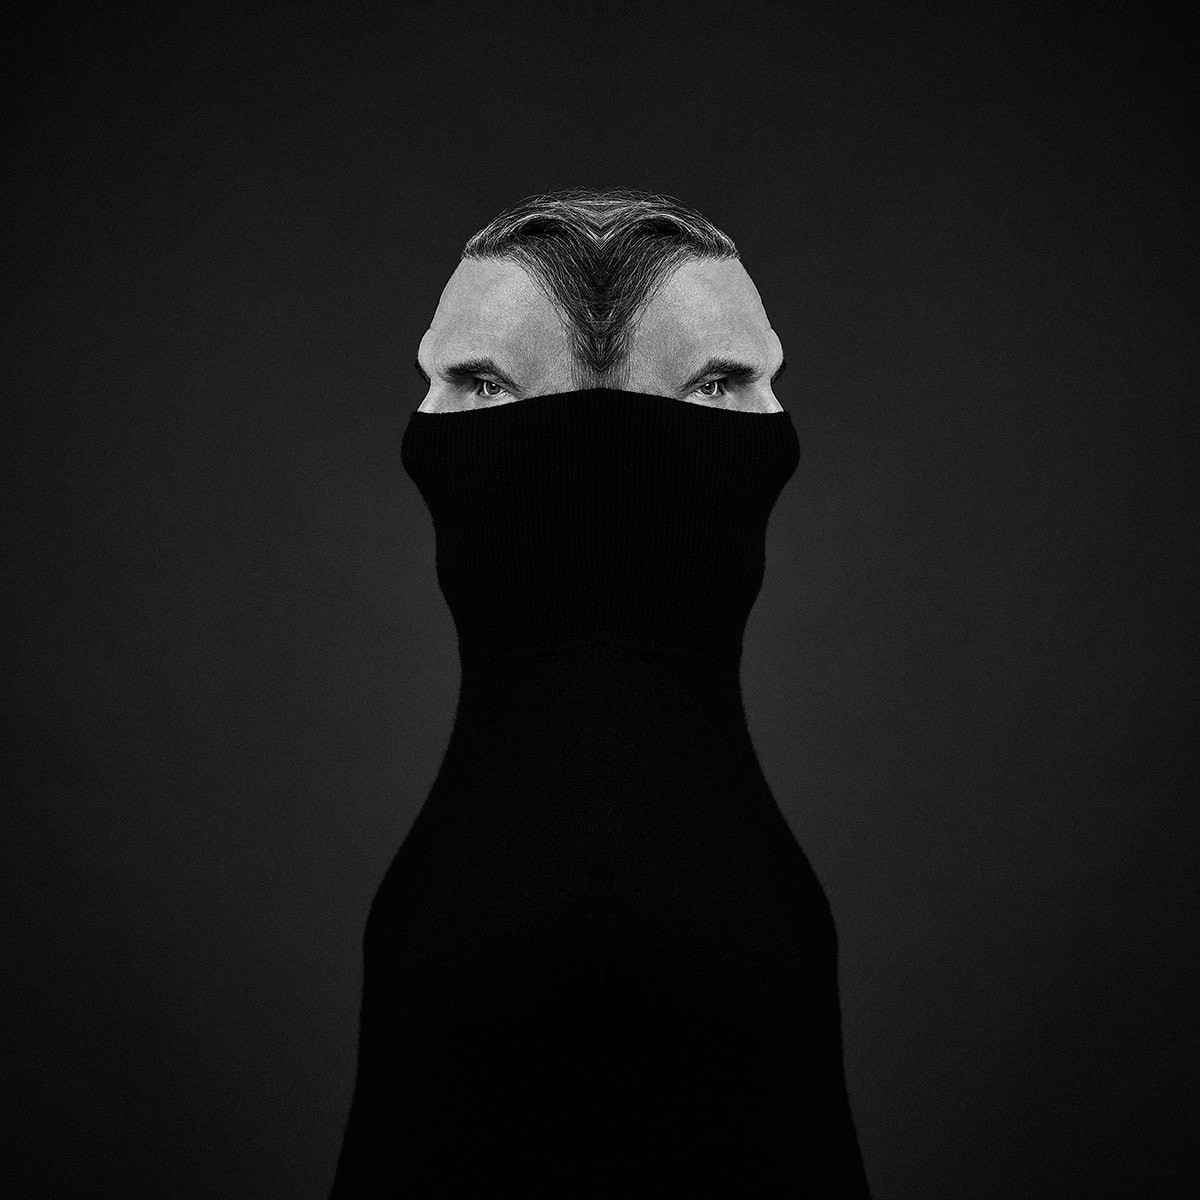 Künstlerisches Selbstportrait des Fotografen Markus Mielek. In dem Studioportrait vor schwarzem Hintergrund posiert der Fotograf selber vor der Kamera und bearbeitete das Bild im Anschluß zu einer Montage